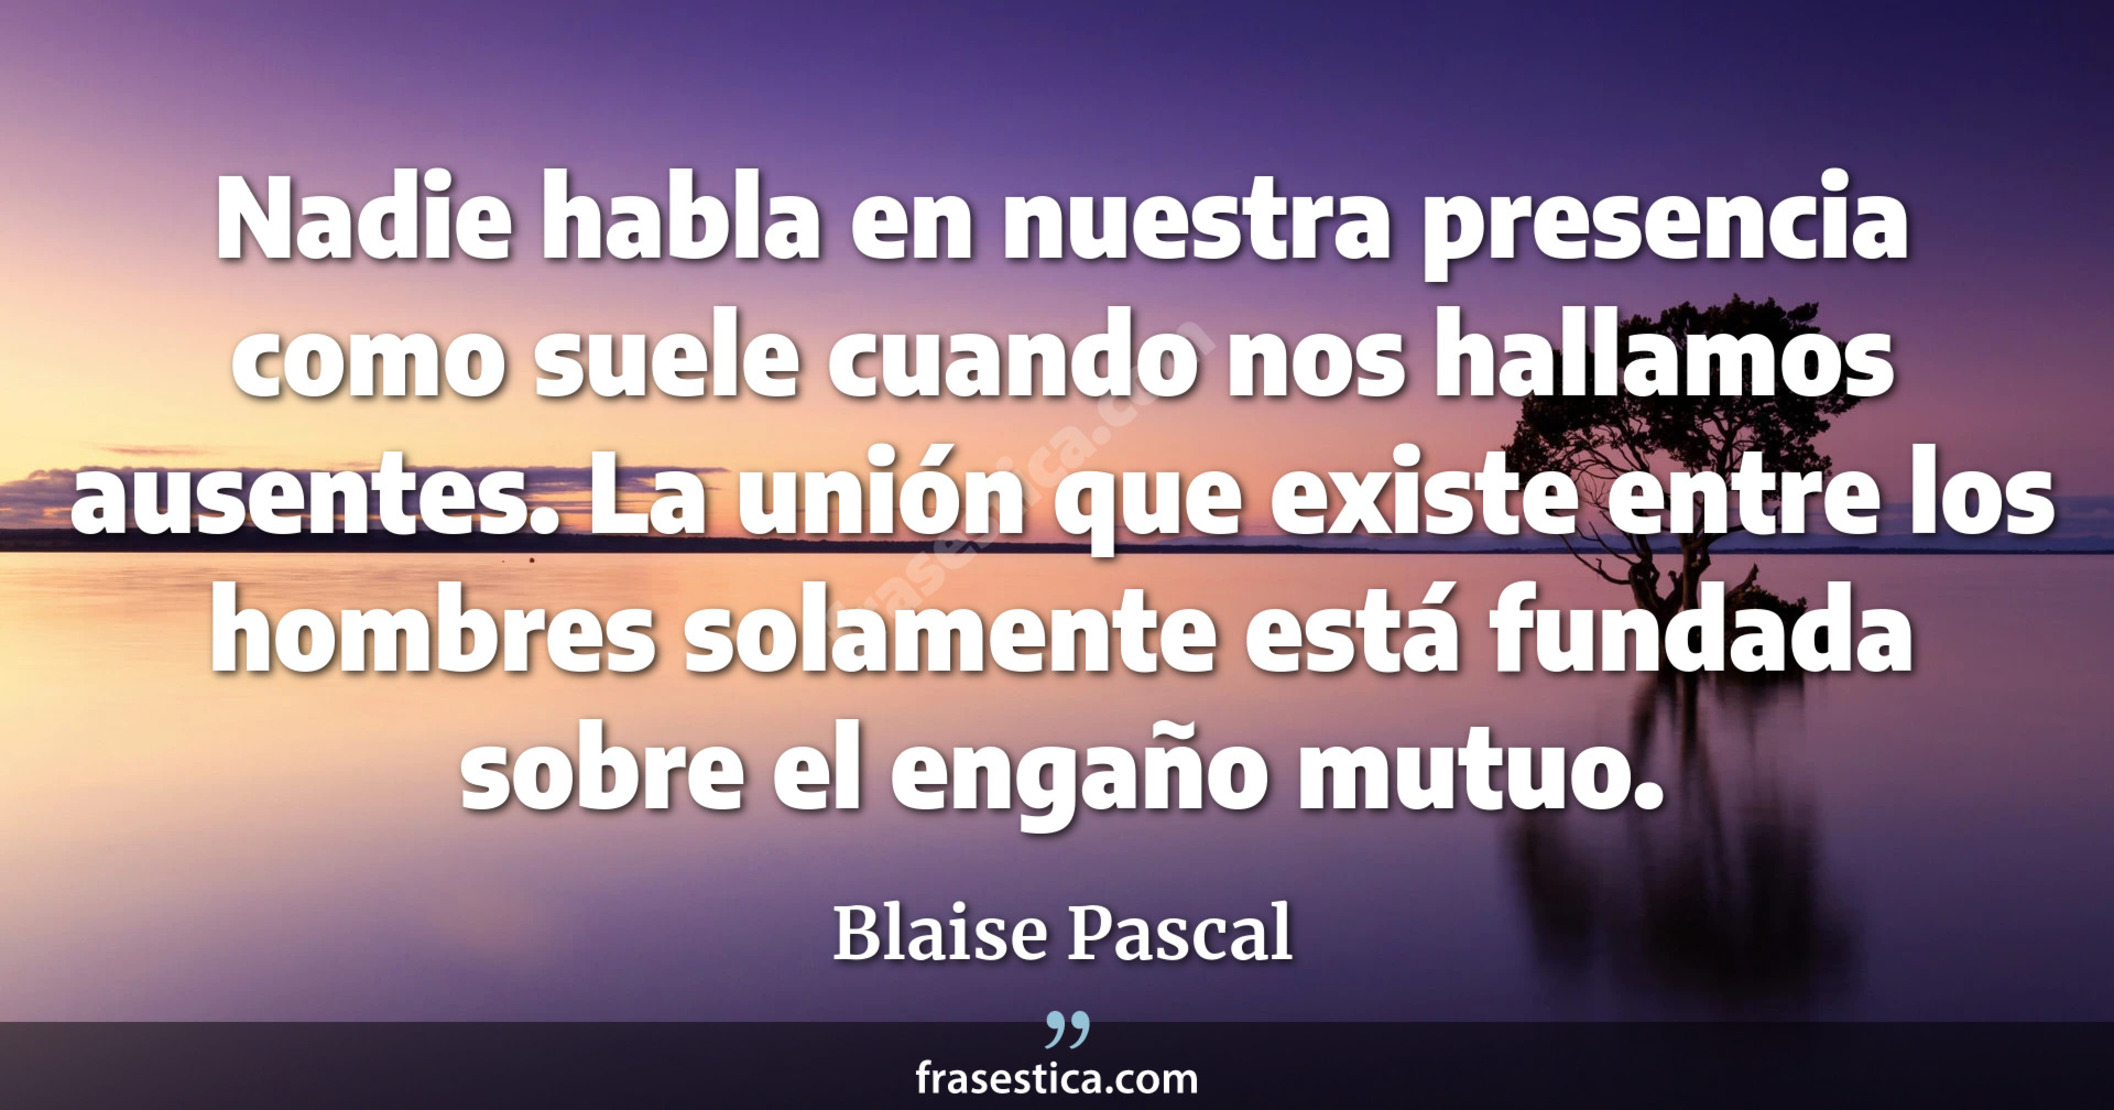 Nadie habla en nuestra presencia como suele cuando nos hallamos ausentes. La unión que existe entre los hombres solamente está fundada sobre el engaño mutuo. - Blaise Pascal